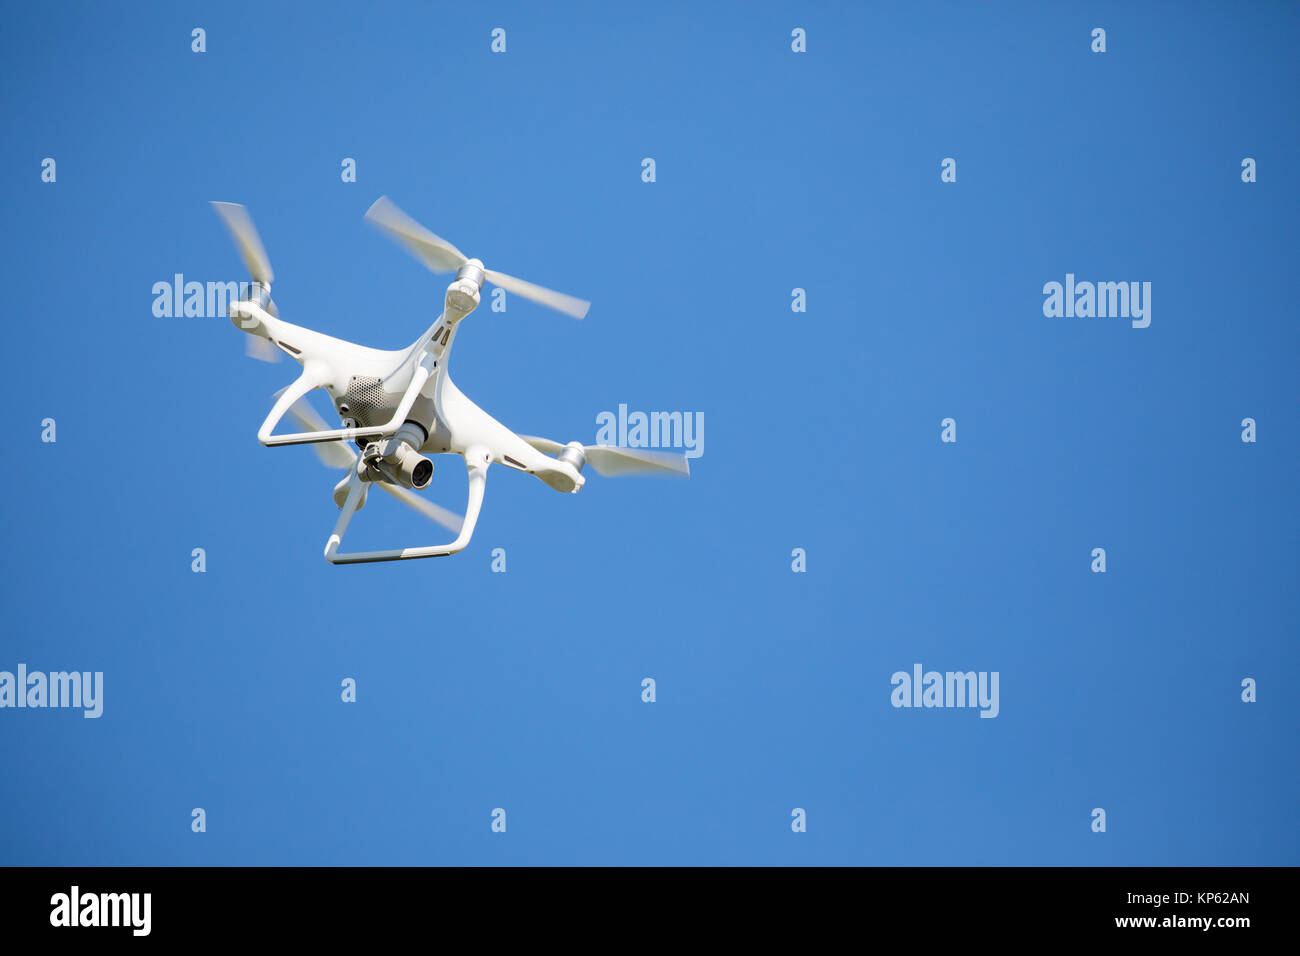 Bianco fotografia drone in volo contro un cielo blu chiaro Foto Stock